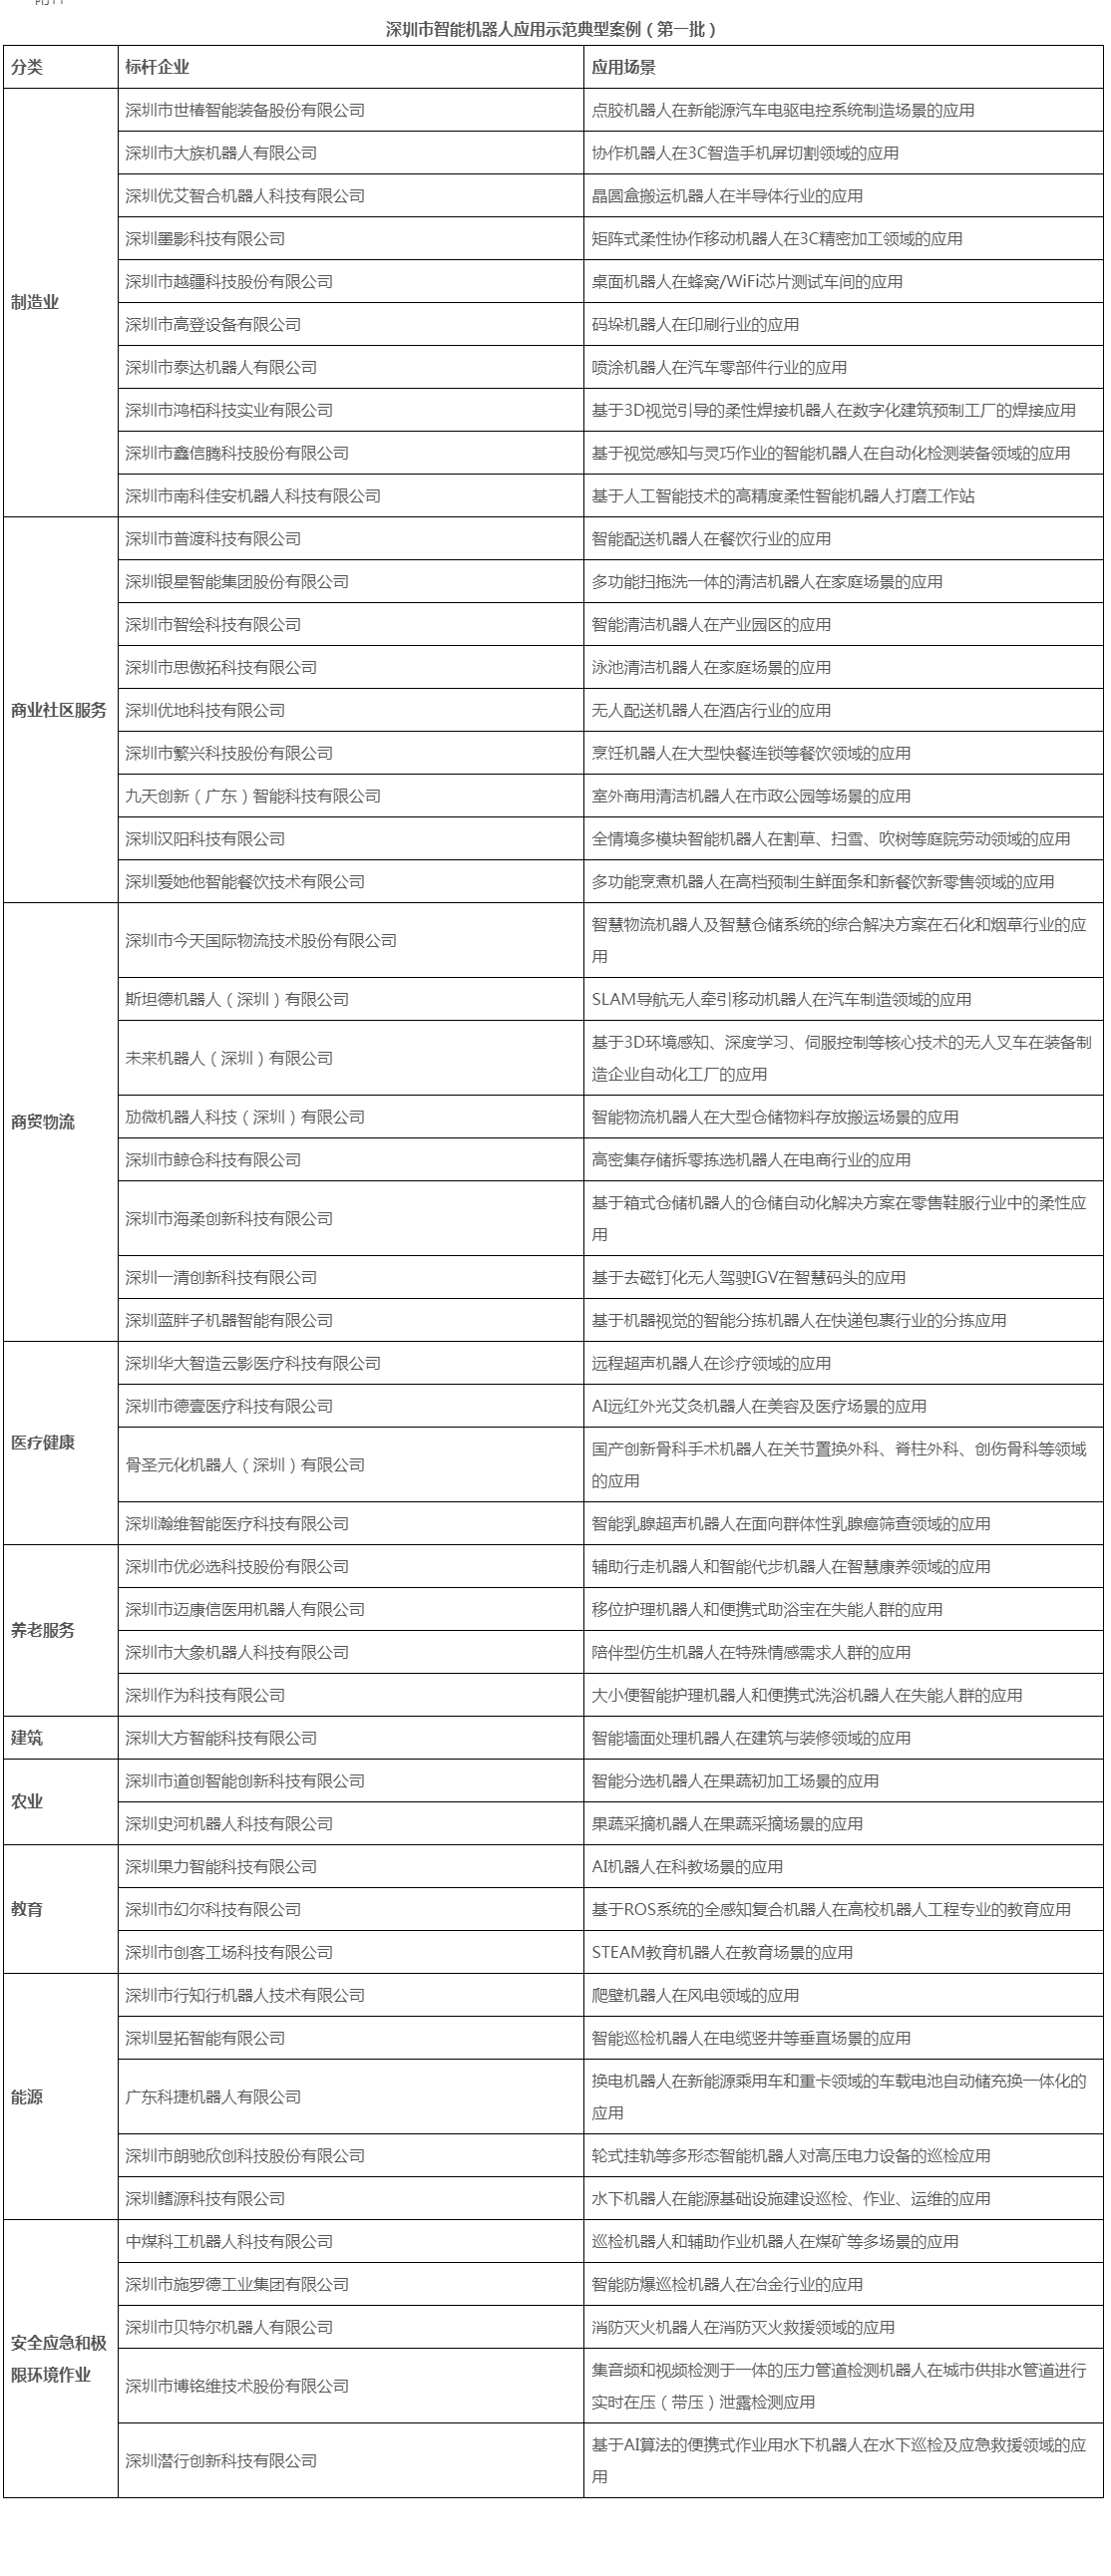 深圳发布第一批智能机器人应用示范典型案例名单